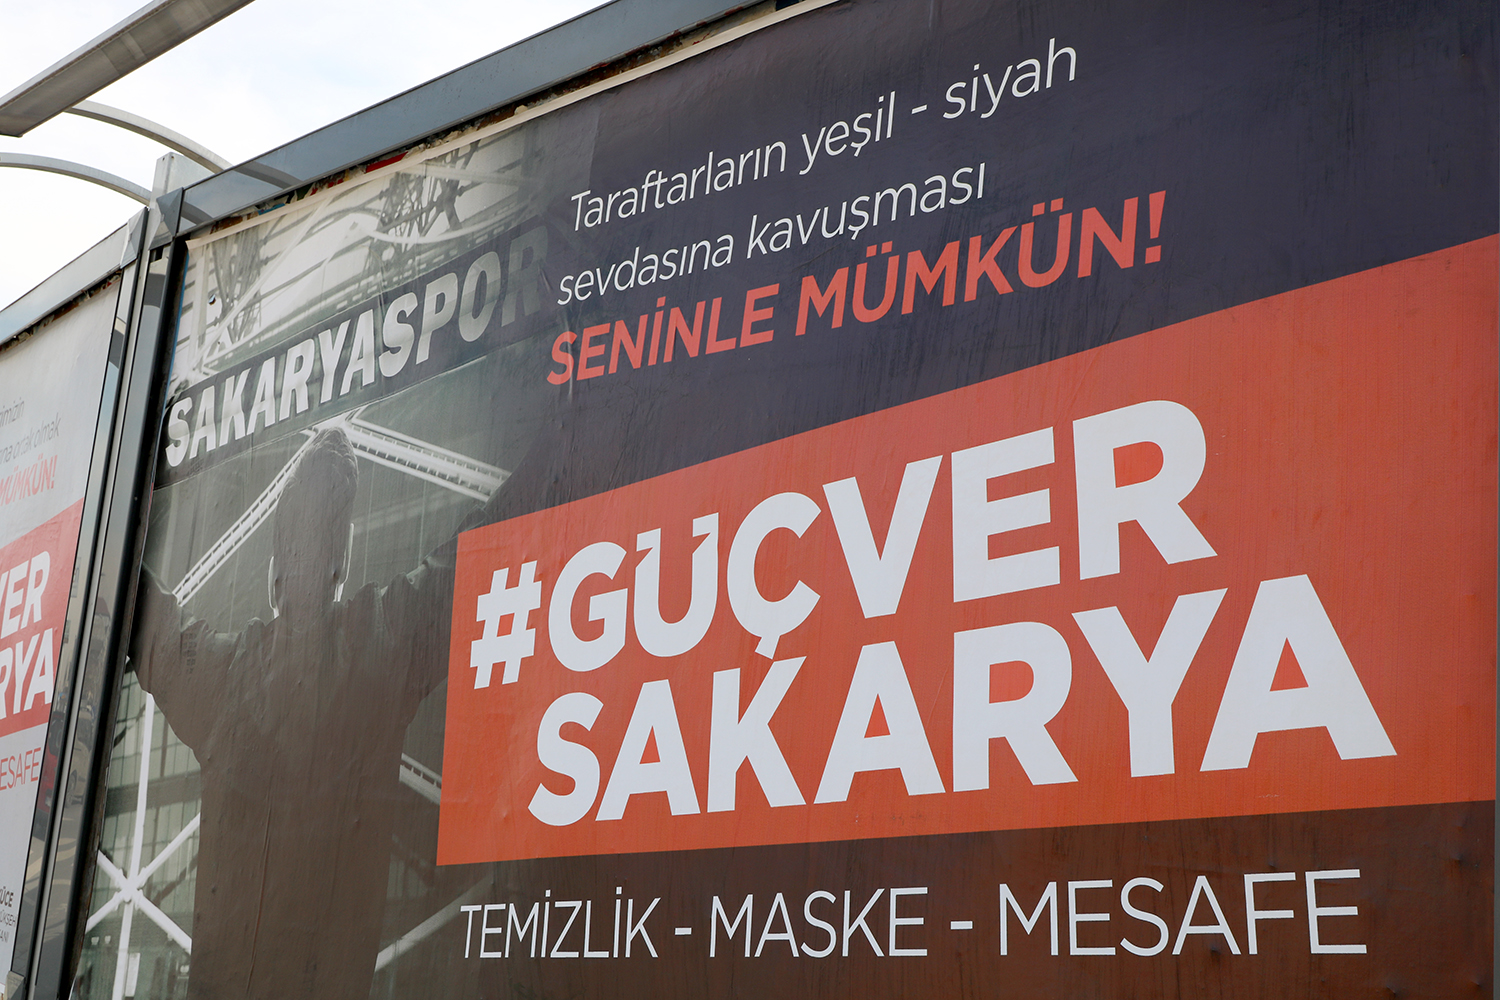 ‘GüçVerSakarya’ Türkiye gündeminde